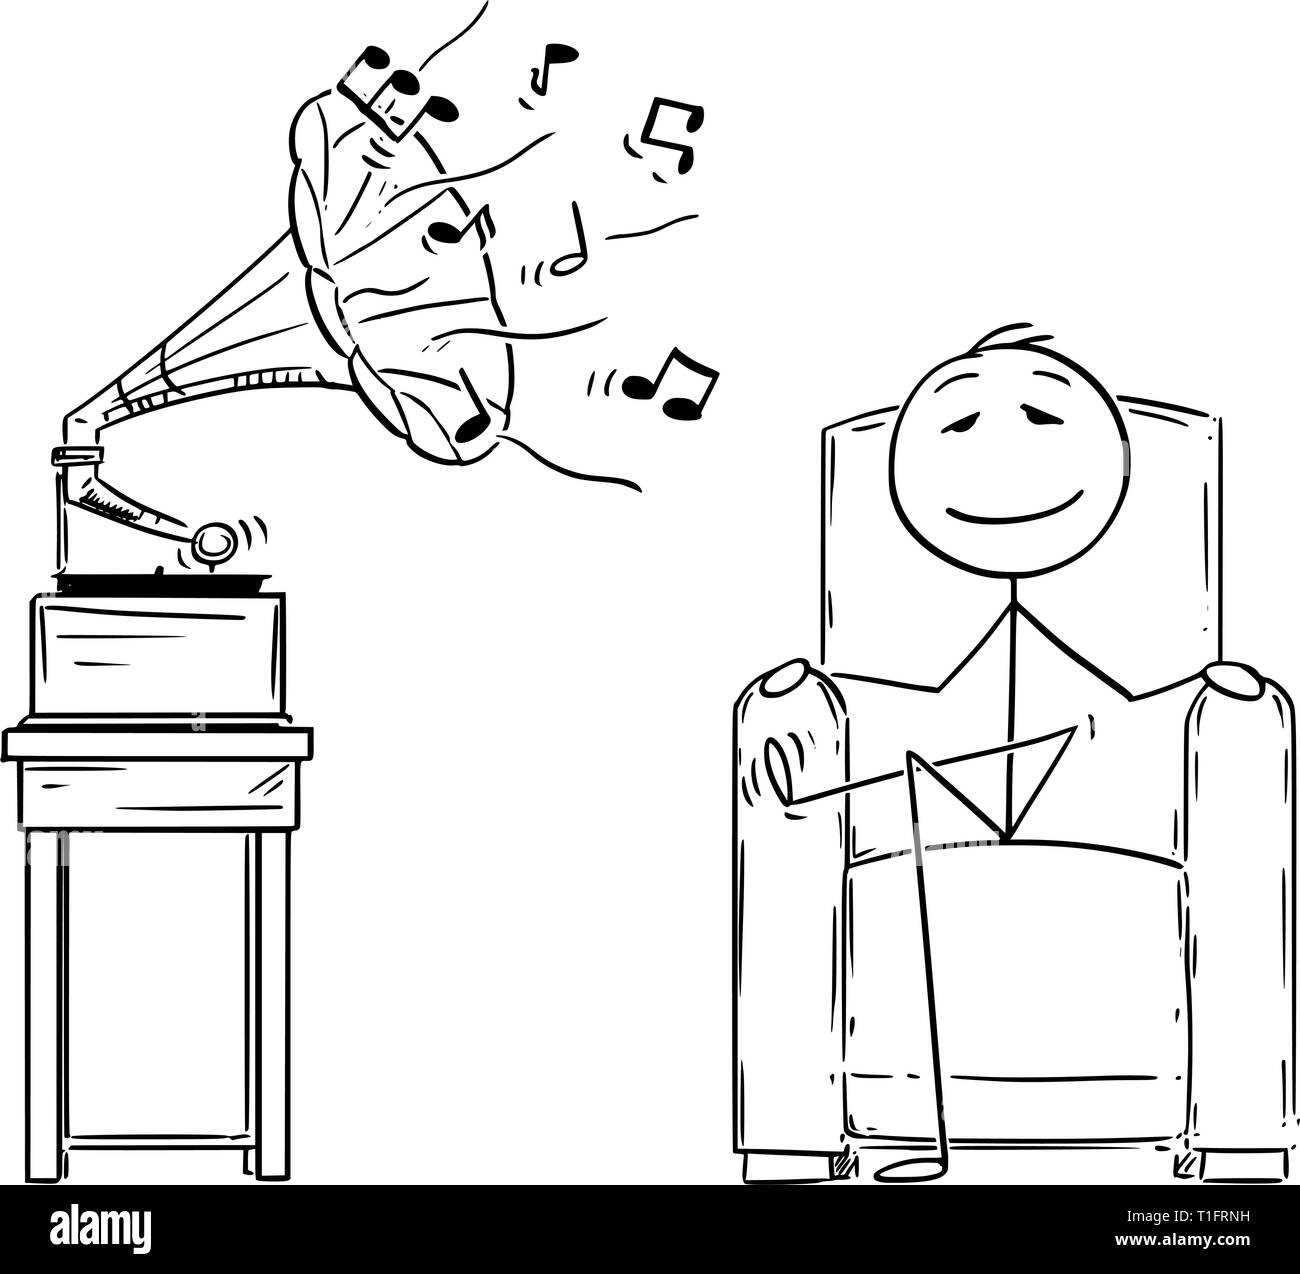 Cartoon Strichmännchen Zeichnen konzeptionelle Darstellung der Mann in einem bequemen Sessel sitzen und genießen hören Musik aus antiken Grammophon mit geschlossenen Augen. Stock Vektor